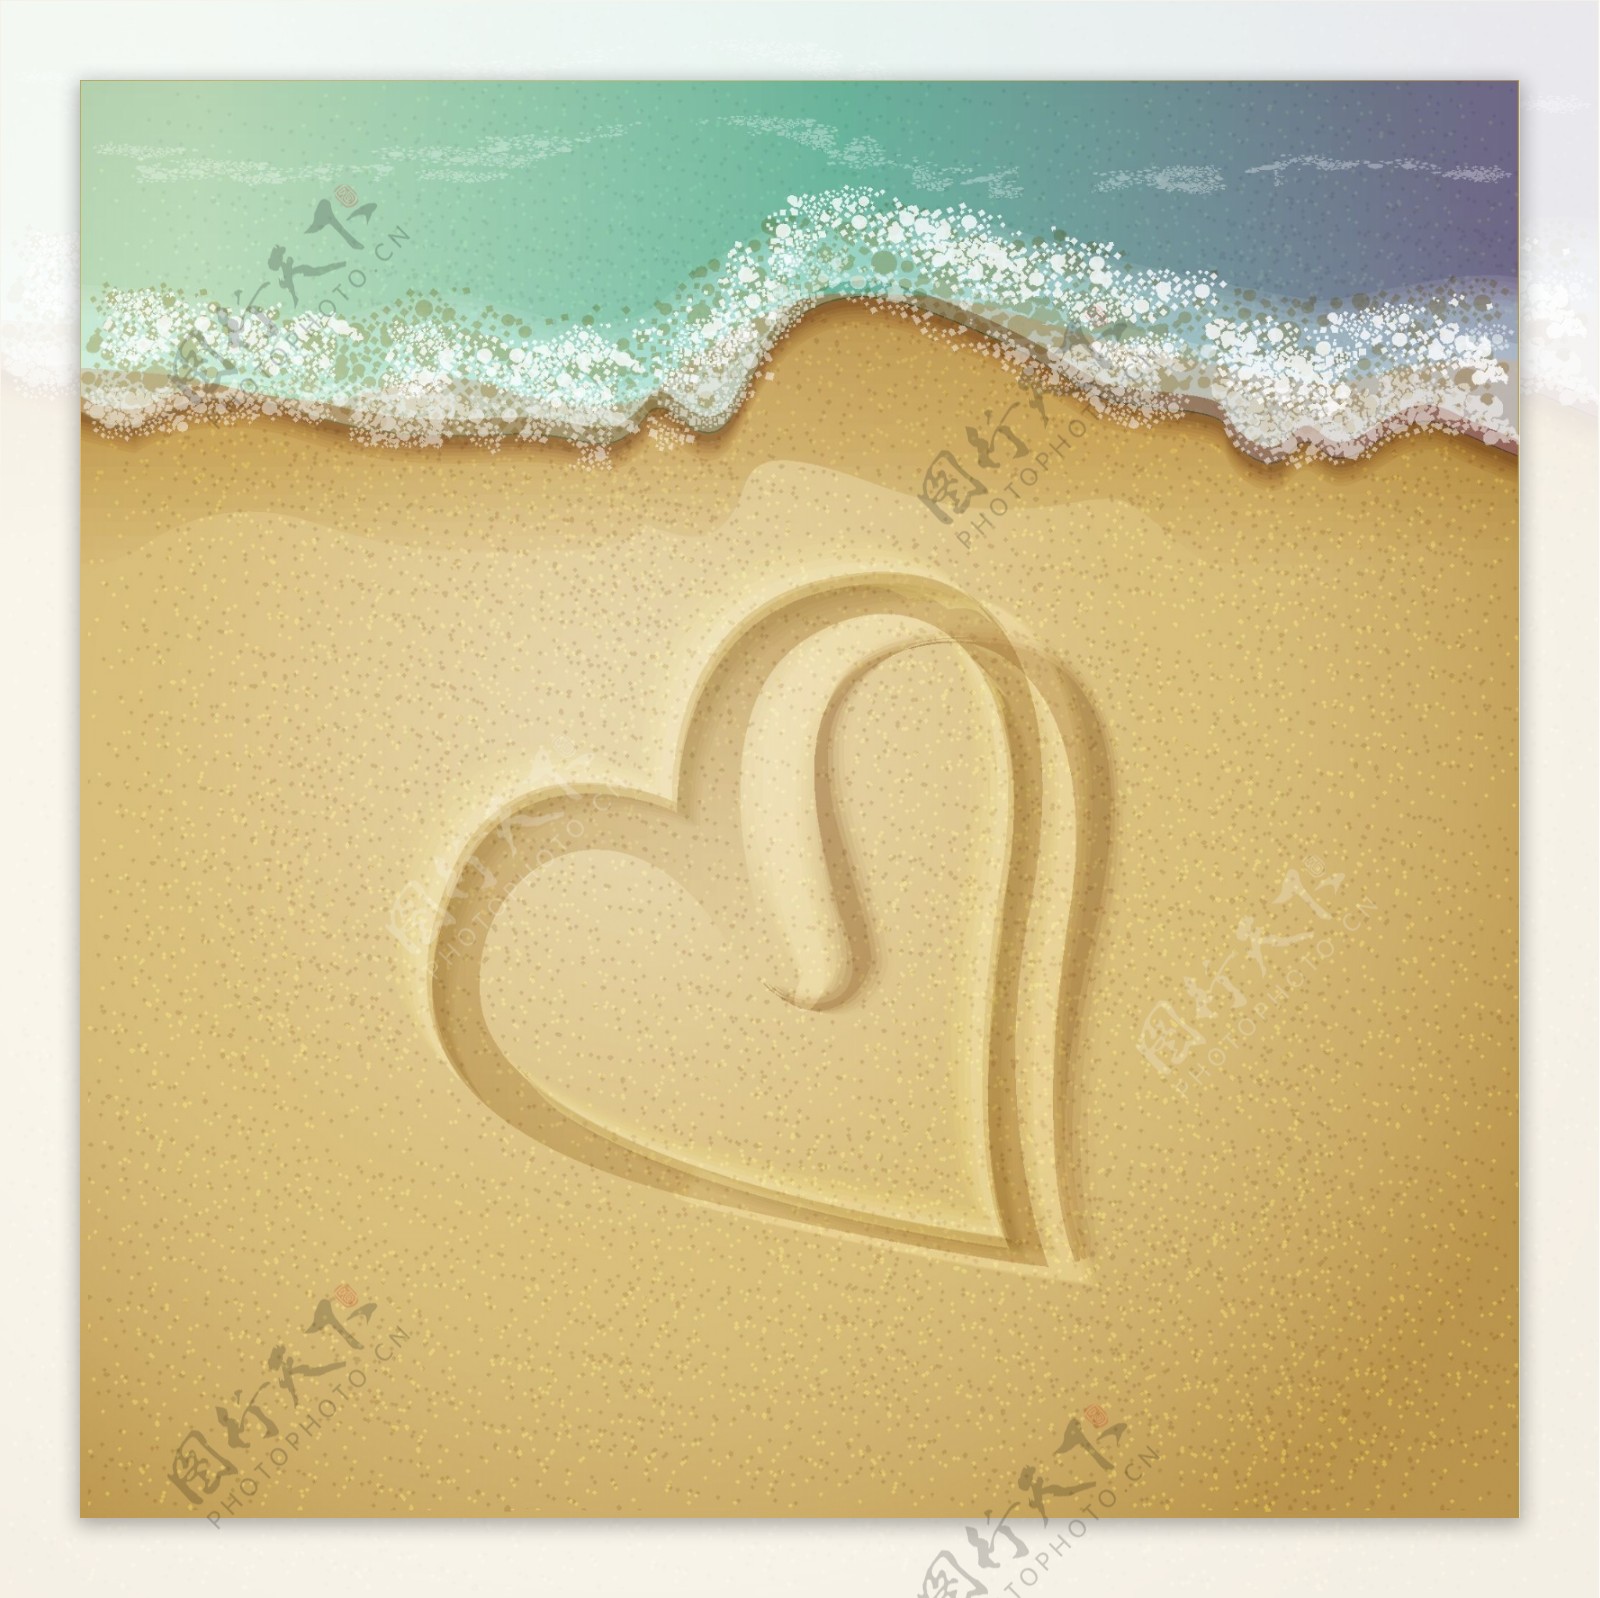 夏日沙滩海星爱心清新壁纸写真-壁纸图片大全